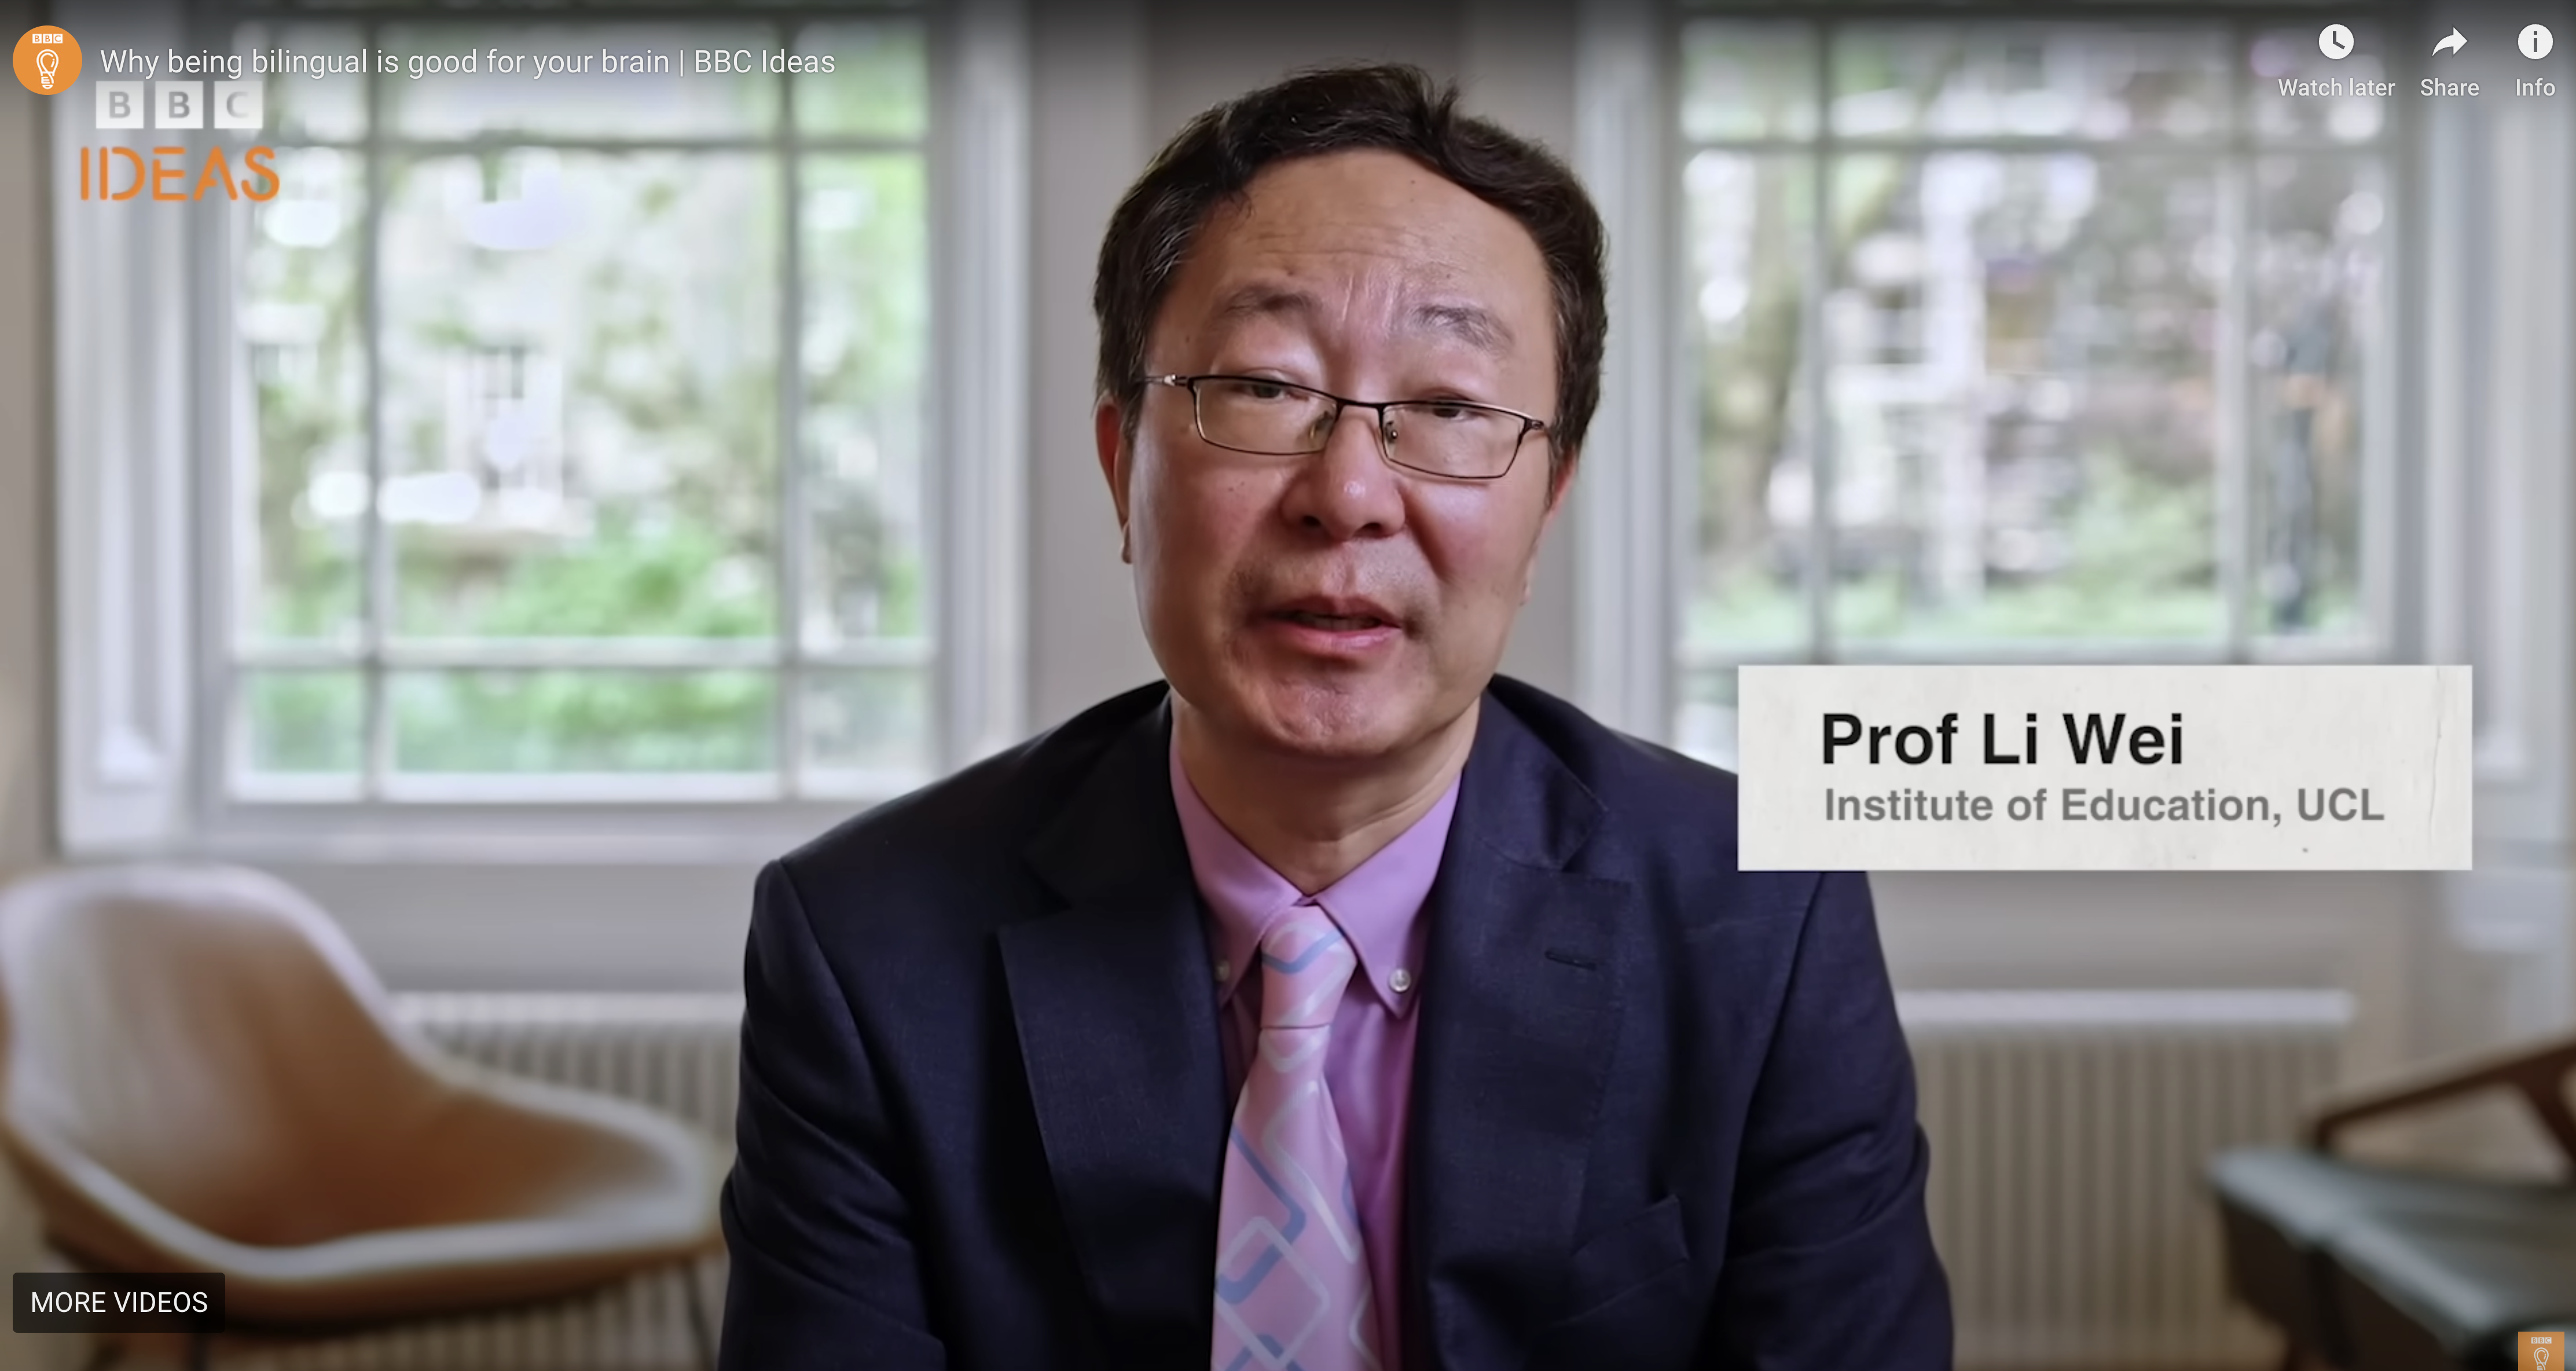 Professor Li Wei